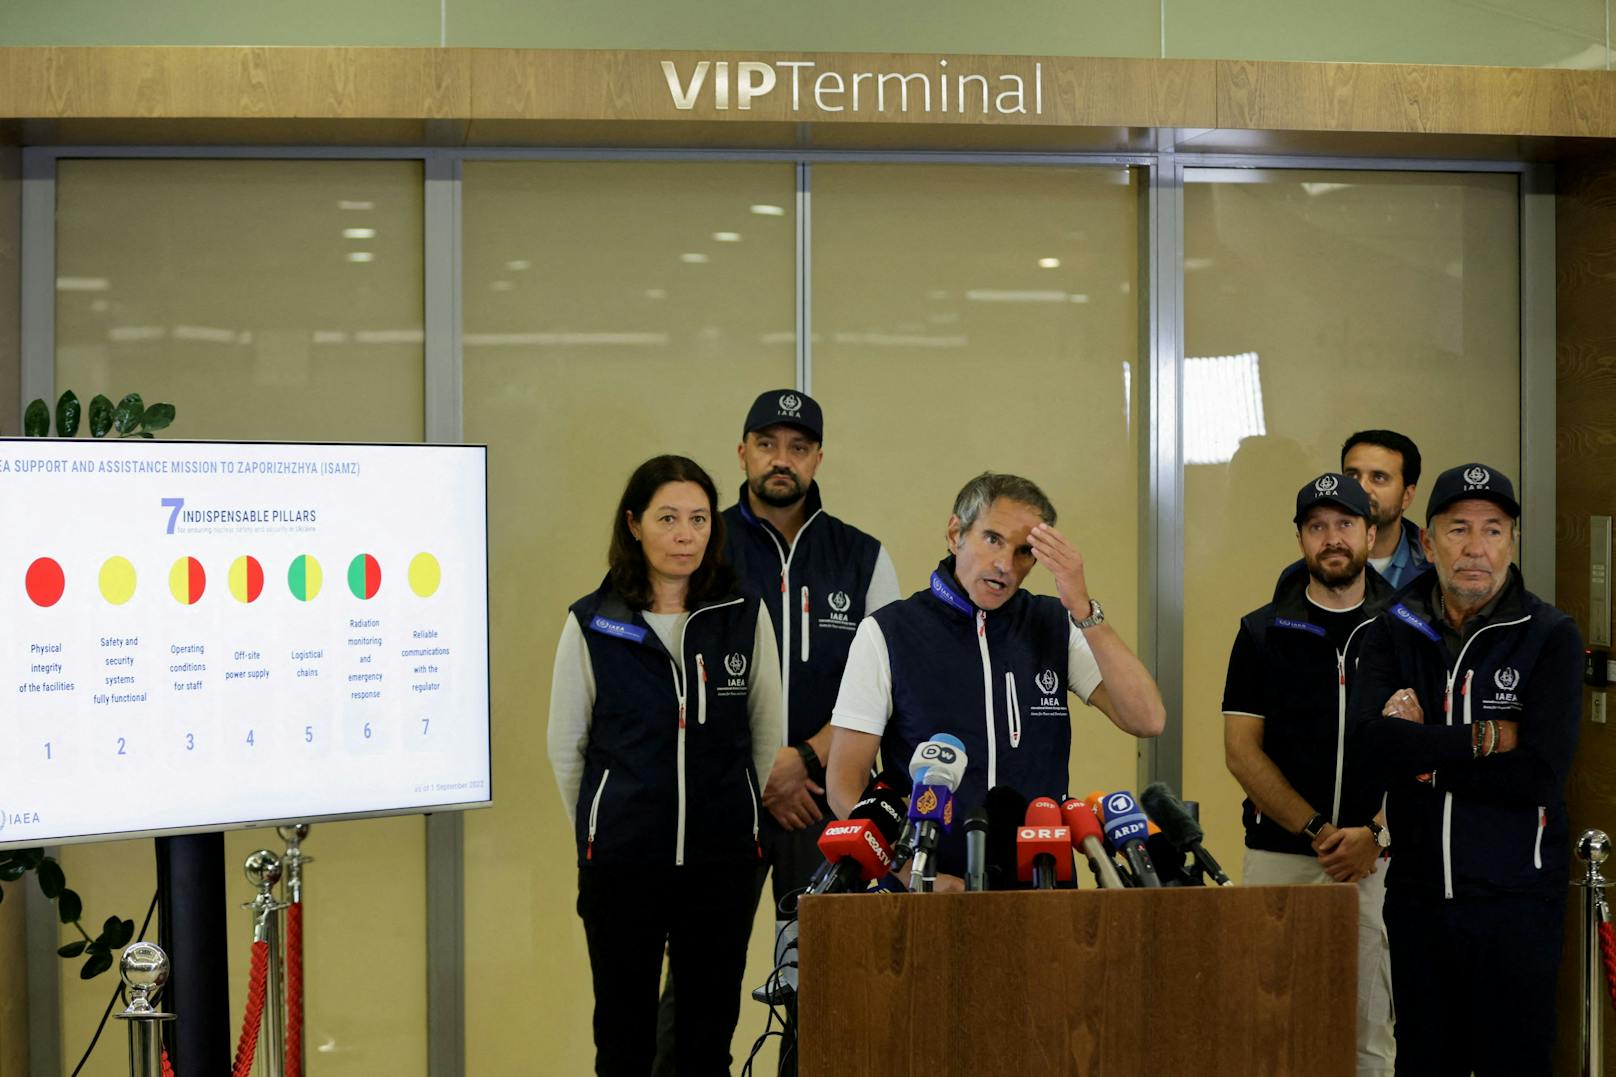 Bei seiner Rückkehr nach Wien gab Grossi bereits am Flughafen eine erste Pressekonferenz, um über die gemachten Beobachtungen und mögliche Gefahren zu informieren.